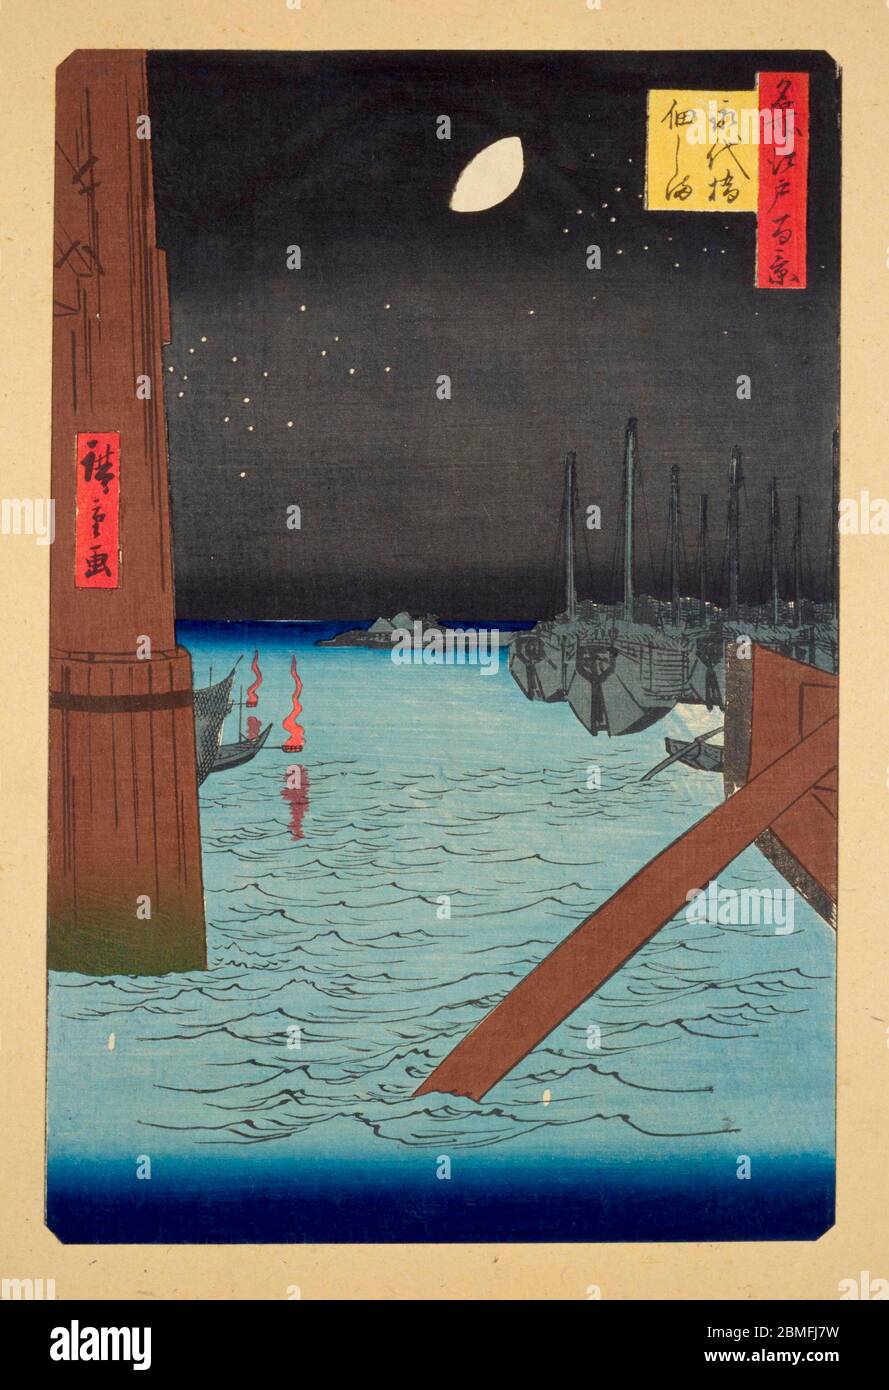 [ 1850er Japan - Boote auf Sumidagawa River ] - der Sumidagawa River in Edo (aktuelle Tokyo) und Fischerboote von Tsukudajima aus der Eitaibashi Brücke, 1857 (Ansei 4) gesehen. Dieser Holzschnitt ist Bild 4 in hundert berühmten Ansichten von Edo (名所江戸百景, Meisho Edo Hyakkei), einer Serie von Ukiyoe Künstler Utagawa Hiroshige (歌川広重, 1797–1858) erstellt. Es ist eine von 42 Frühlingsszenen der Serie. Titel: Tsukudajima und Eitai Brücke (永代橋佃しま, Eitaibashi Tsukudajima) 19. Jahrhundert Vintage Ukiyoe Holzschnitt. Stockfoto